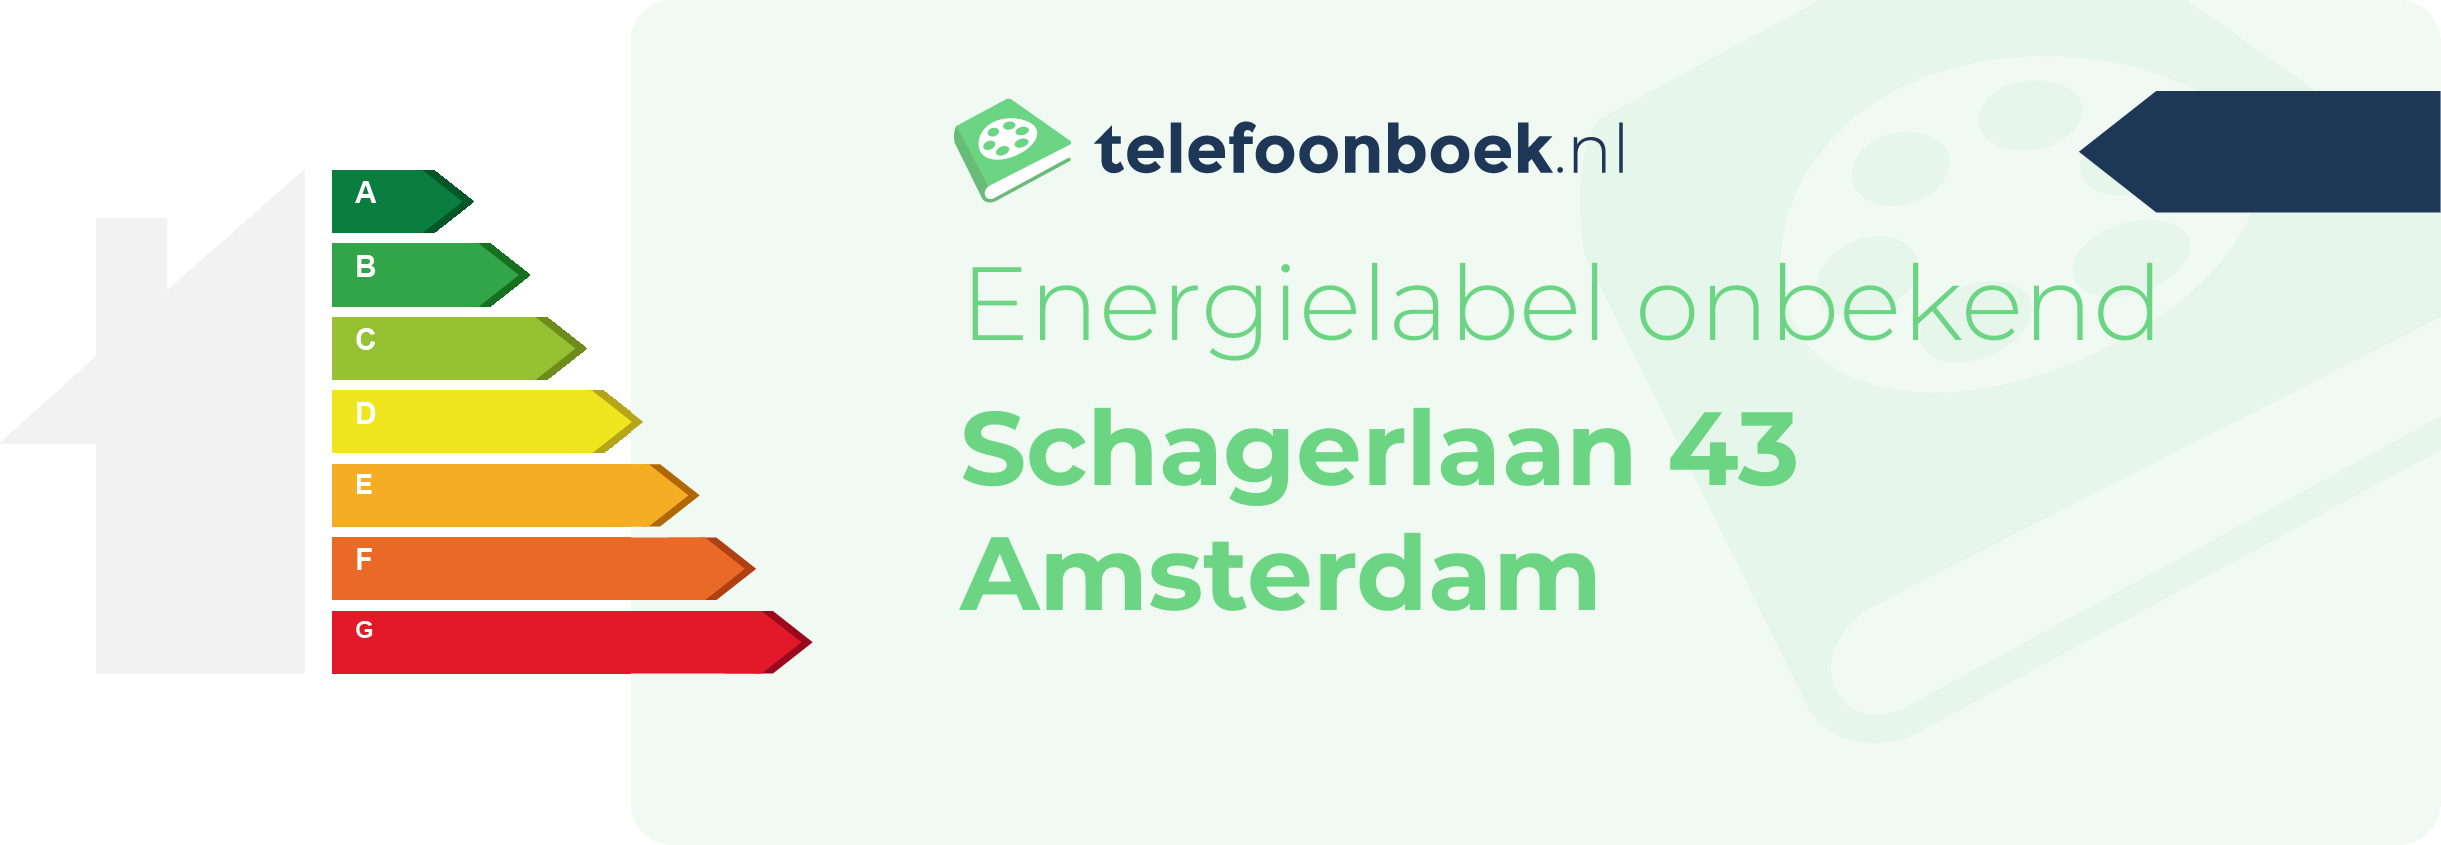 Energielabel Schagerlaan 43 Amsterdam